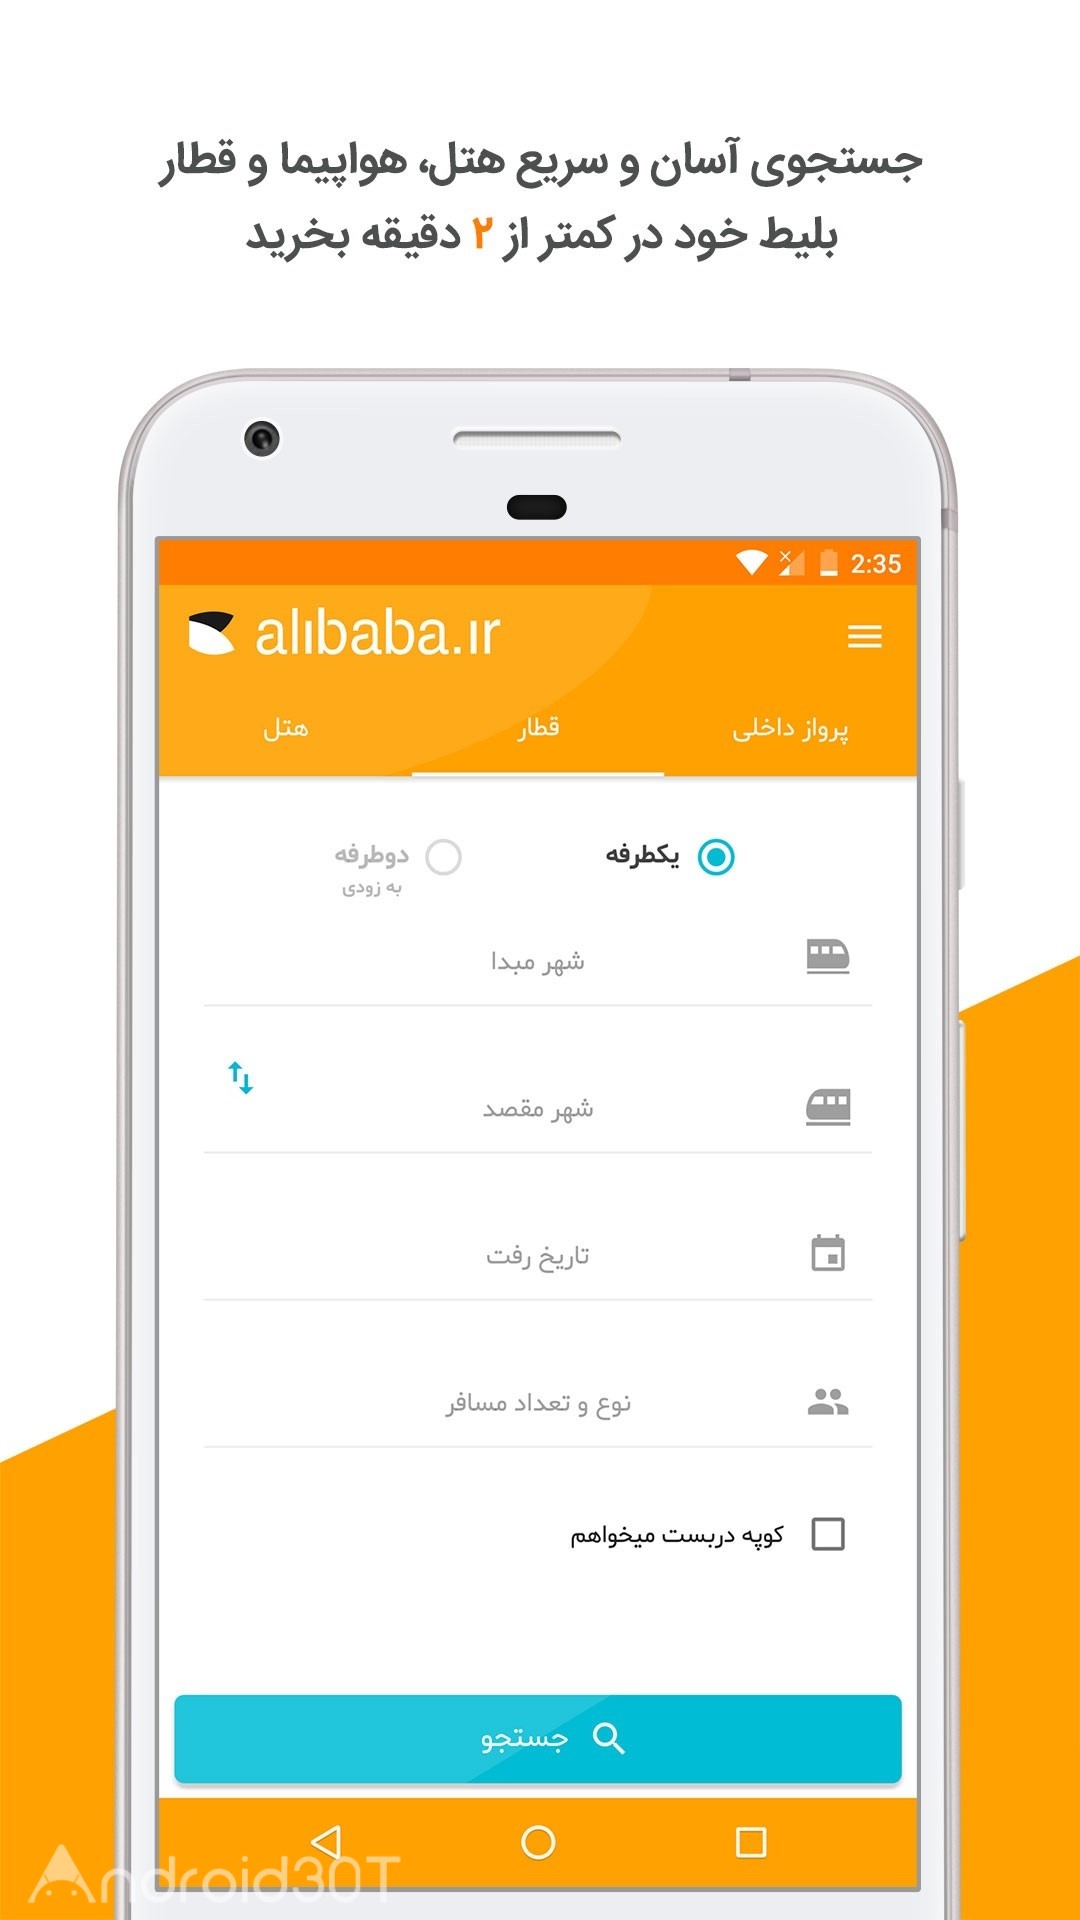 دانلود Alibaba 8.9.6 – برنامه خرید آنلاین بلیط هواپیما علی بابا اندروید